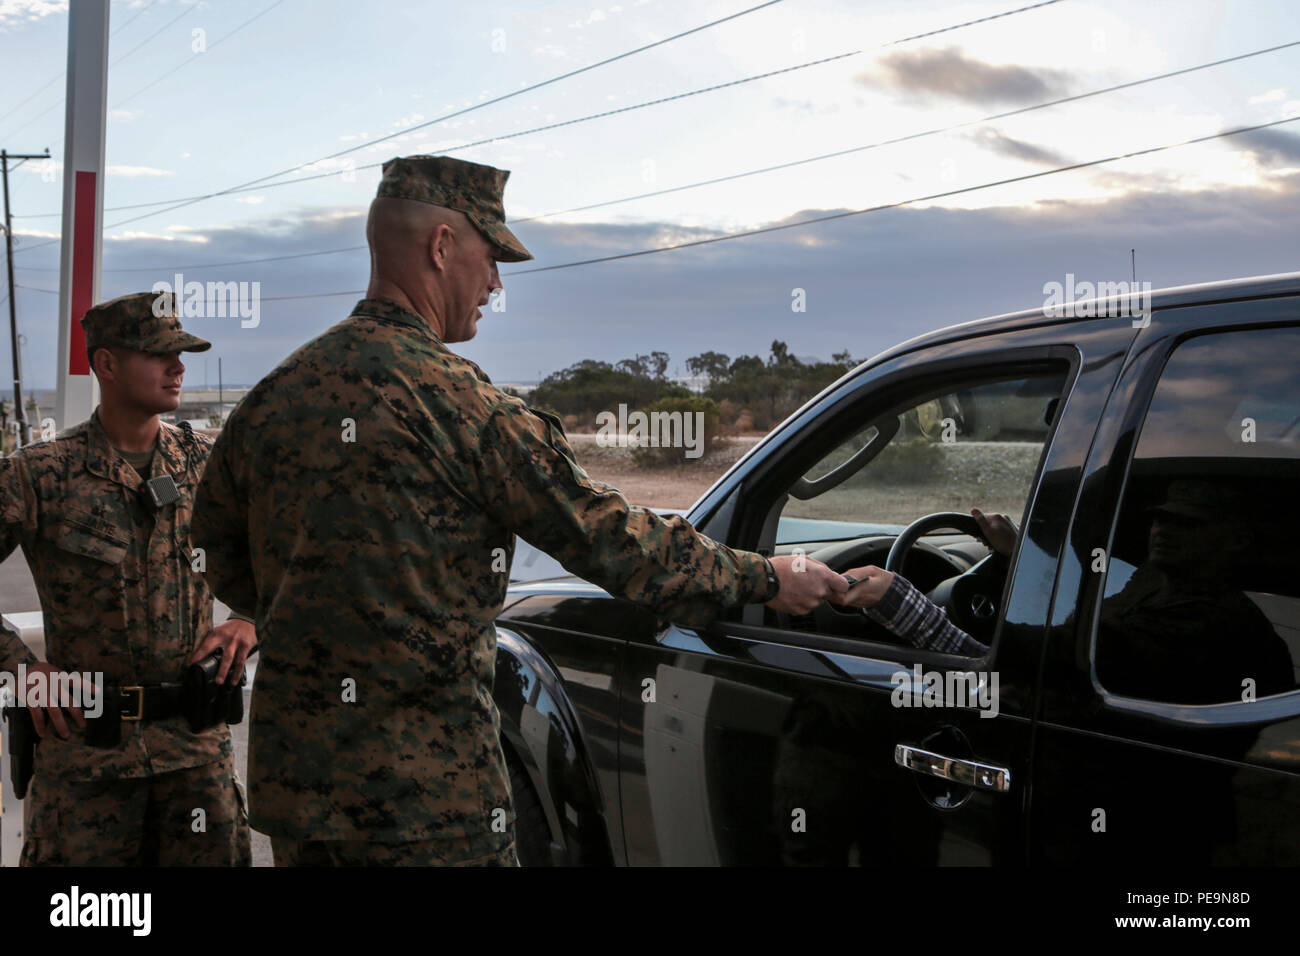 El Sargento de Infantería de Marina de los EE.UU. Gral. Patrick Kimble, Sargento Mayor, de alas de avión Marino en 3D (3d MAW), saluda a un miembro del servicio en un punto de entrada de la Marine Corps Air Station Miramar, de San Diego, California, el 25 de noviembre de 2015. Gral. Gen. Michael un Rocco, Comandante General, 3D MAW, Brig. Gen. Kevin Iiams, Ayudante Wing Commander, 3D MAW, el sargento. Gral. Patrick Kimble, Sargento Mayor, 3D MAW, y el comando de la Marina de los EE.UU Master Chief Petty Officer Frank Dominguez, comando Master Chief 3d MAW, desea unas felices vacaciones a los miembros del servicio y del Departamento de Defensa de los empleados que entraron en la base. (Ee.Uu. Marine Corps foto por CP Foto de stock